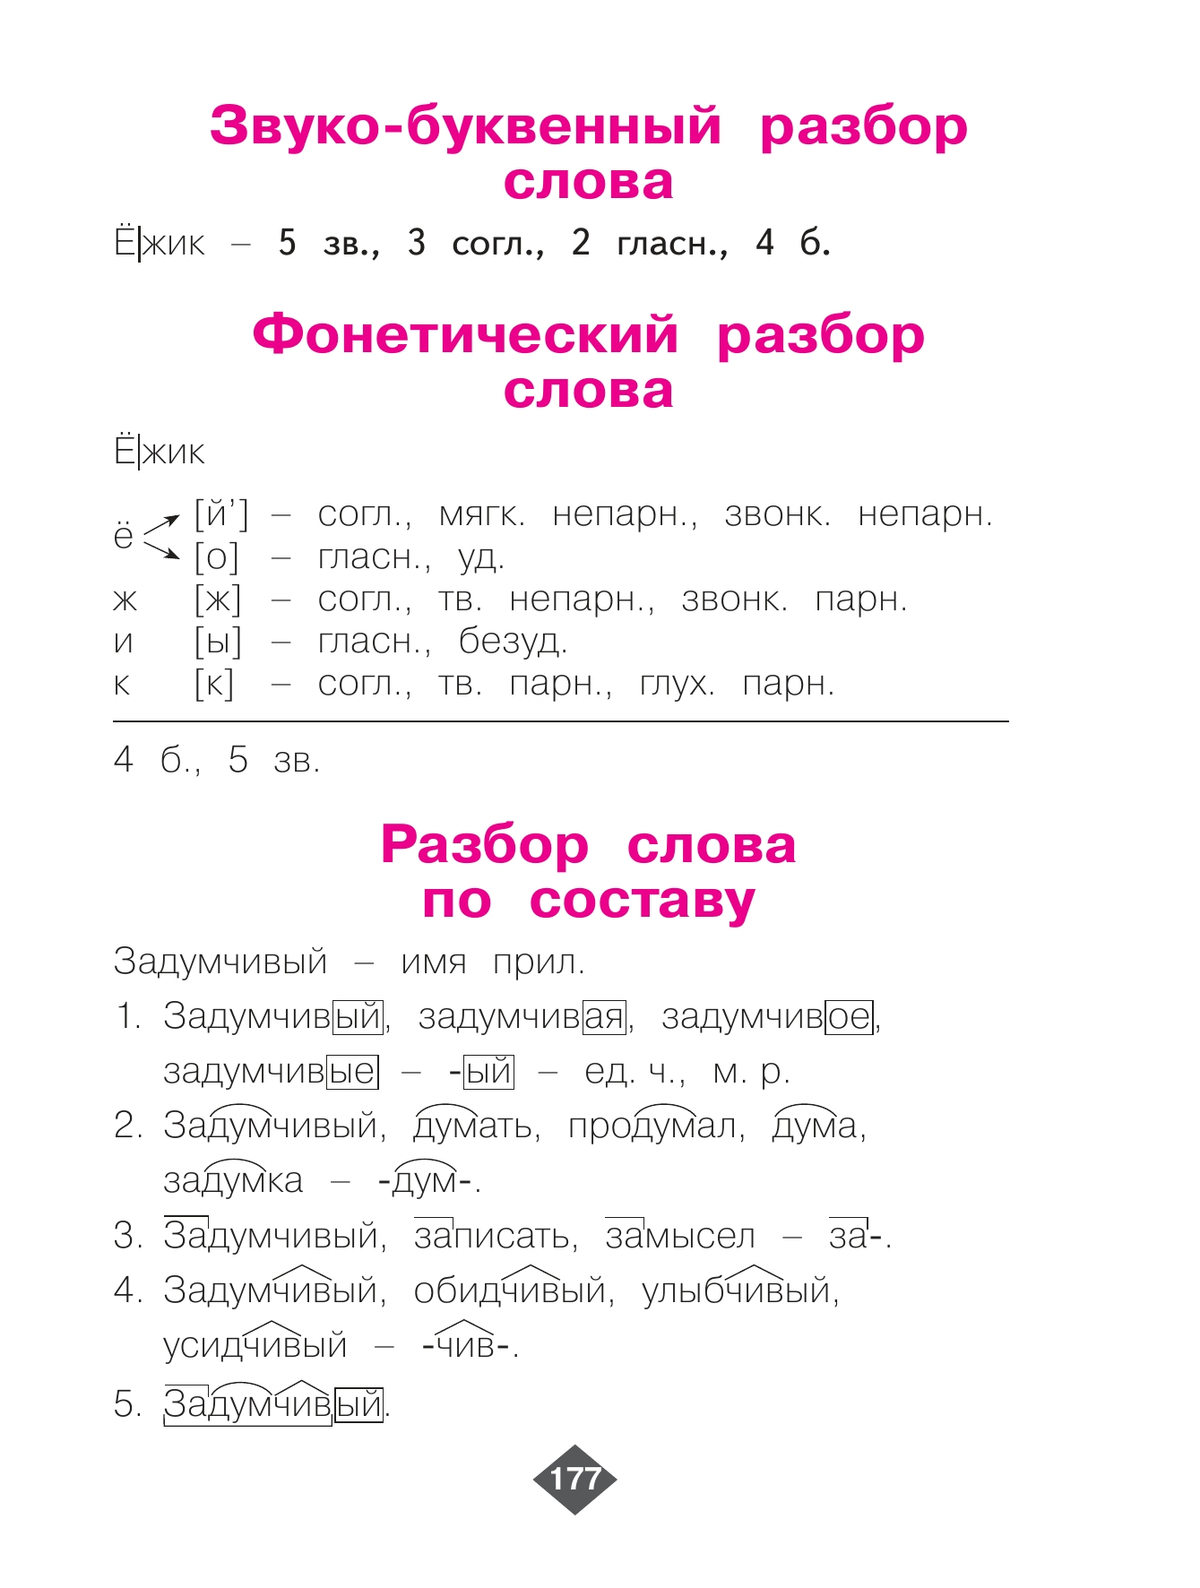 Русский язык. 3 класс. Учебник. В 2 ч. Часть 1 3